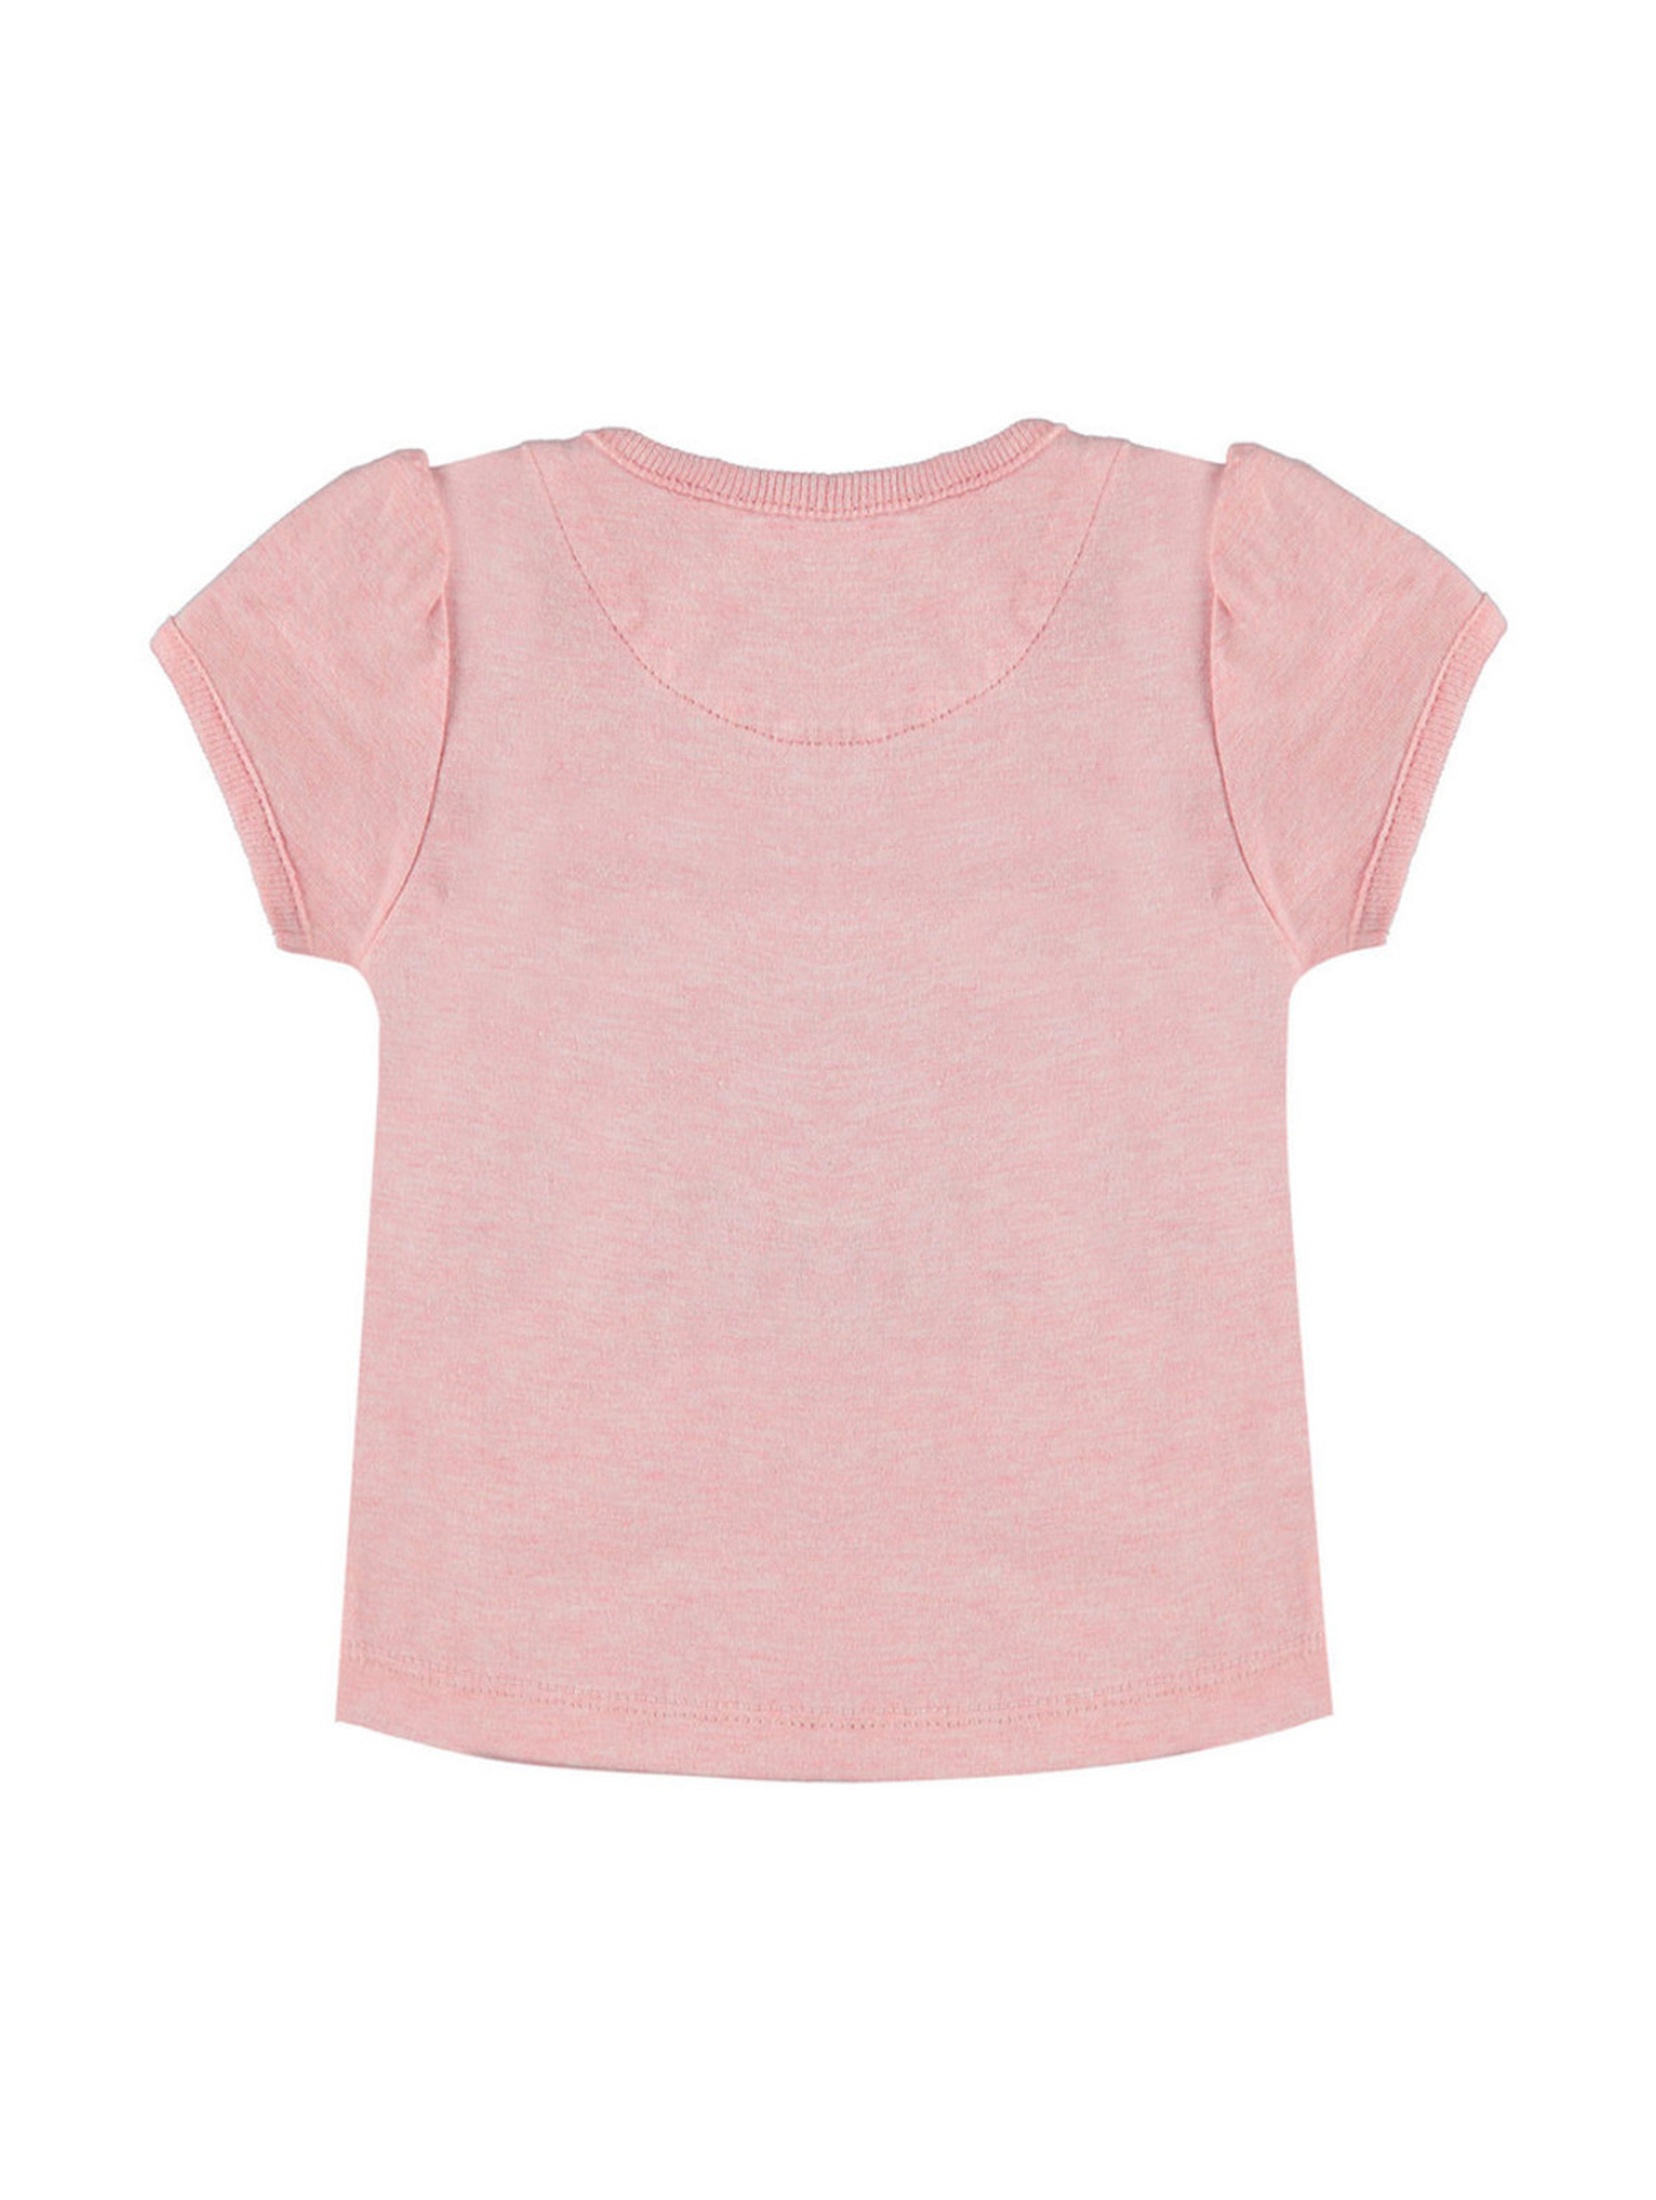 T-shirt dziewczęcy różowy napisy różowy